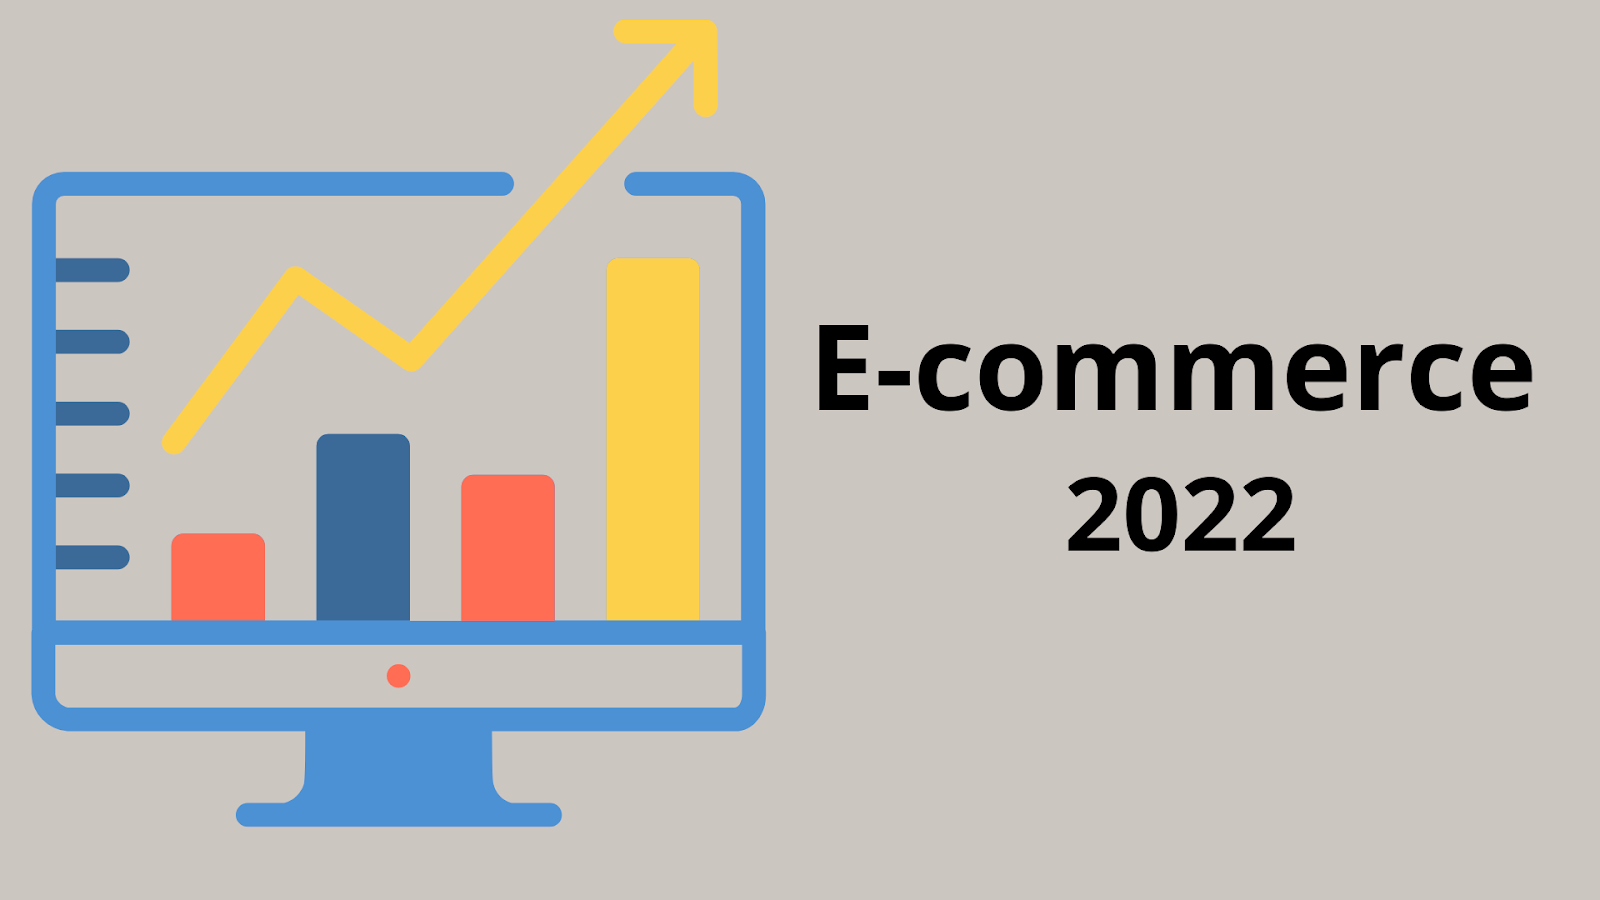 Какова статистика электронной коммерции в 2022 г. Тенденции, факты, прогнозы на будущее